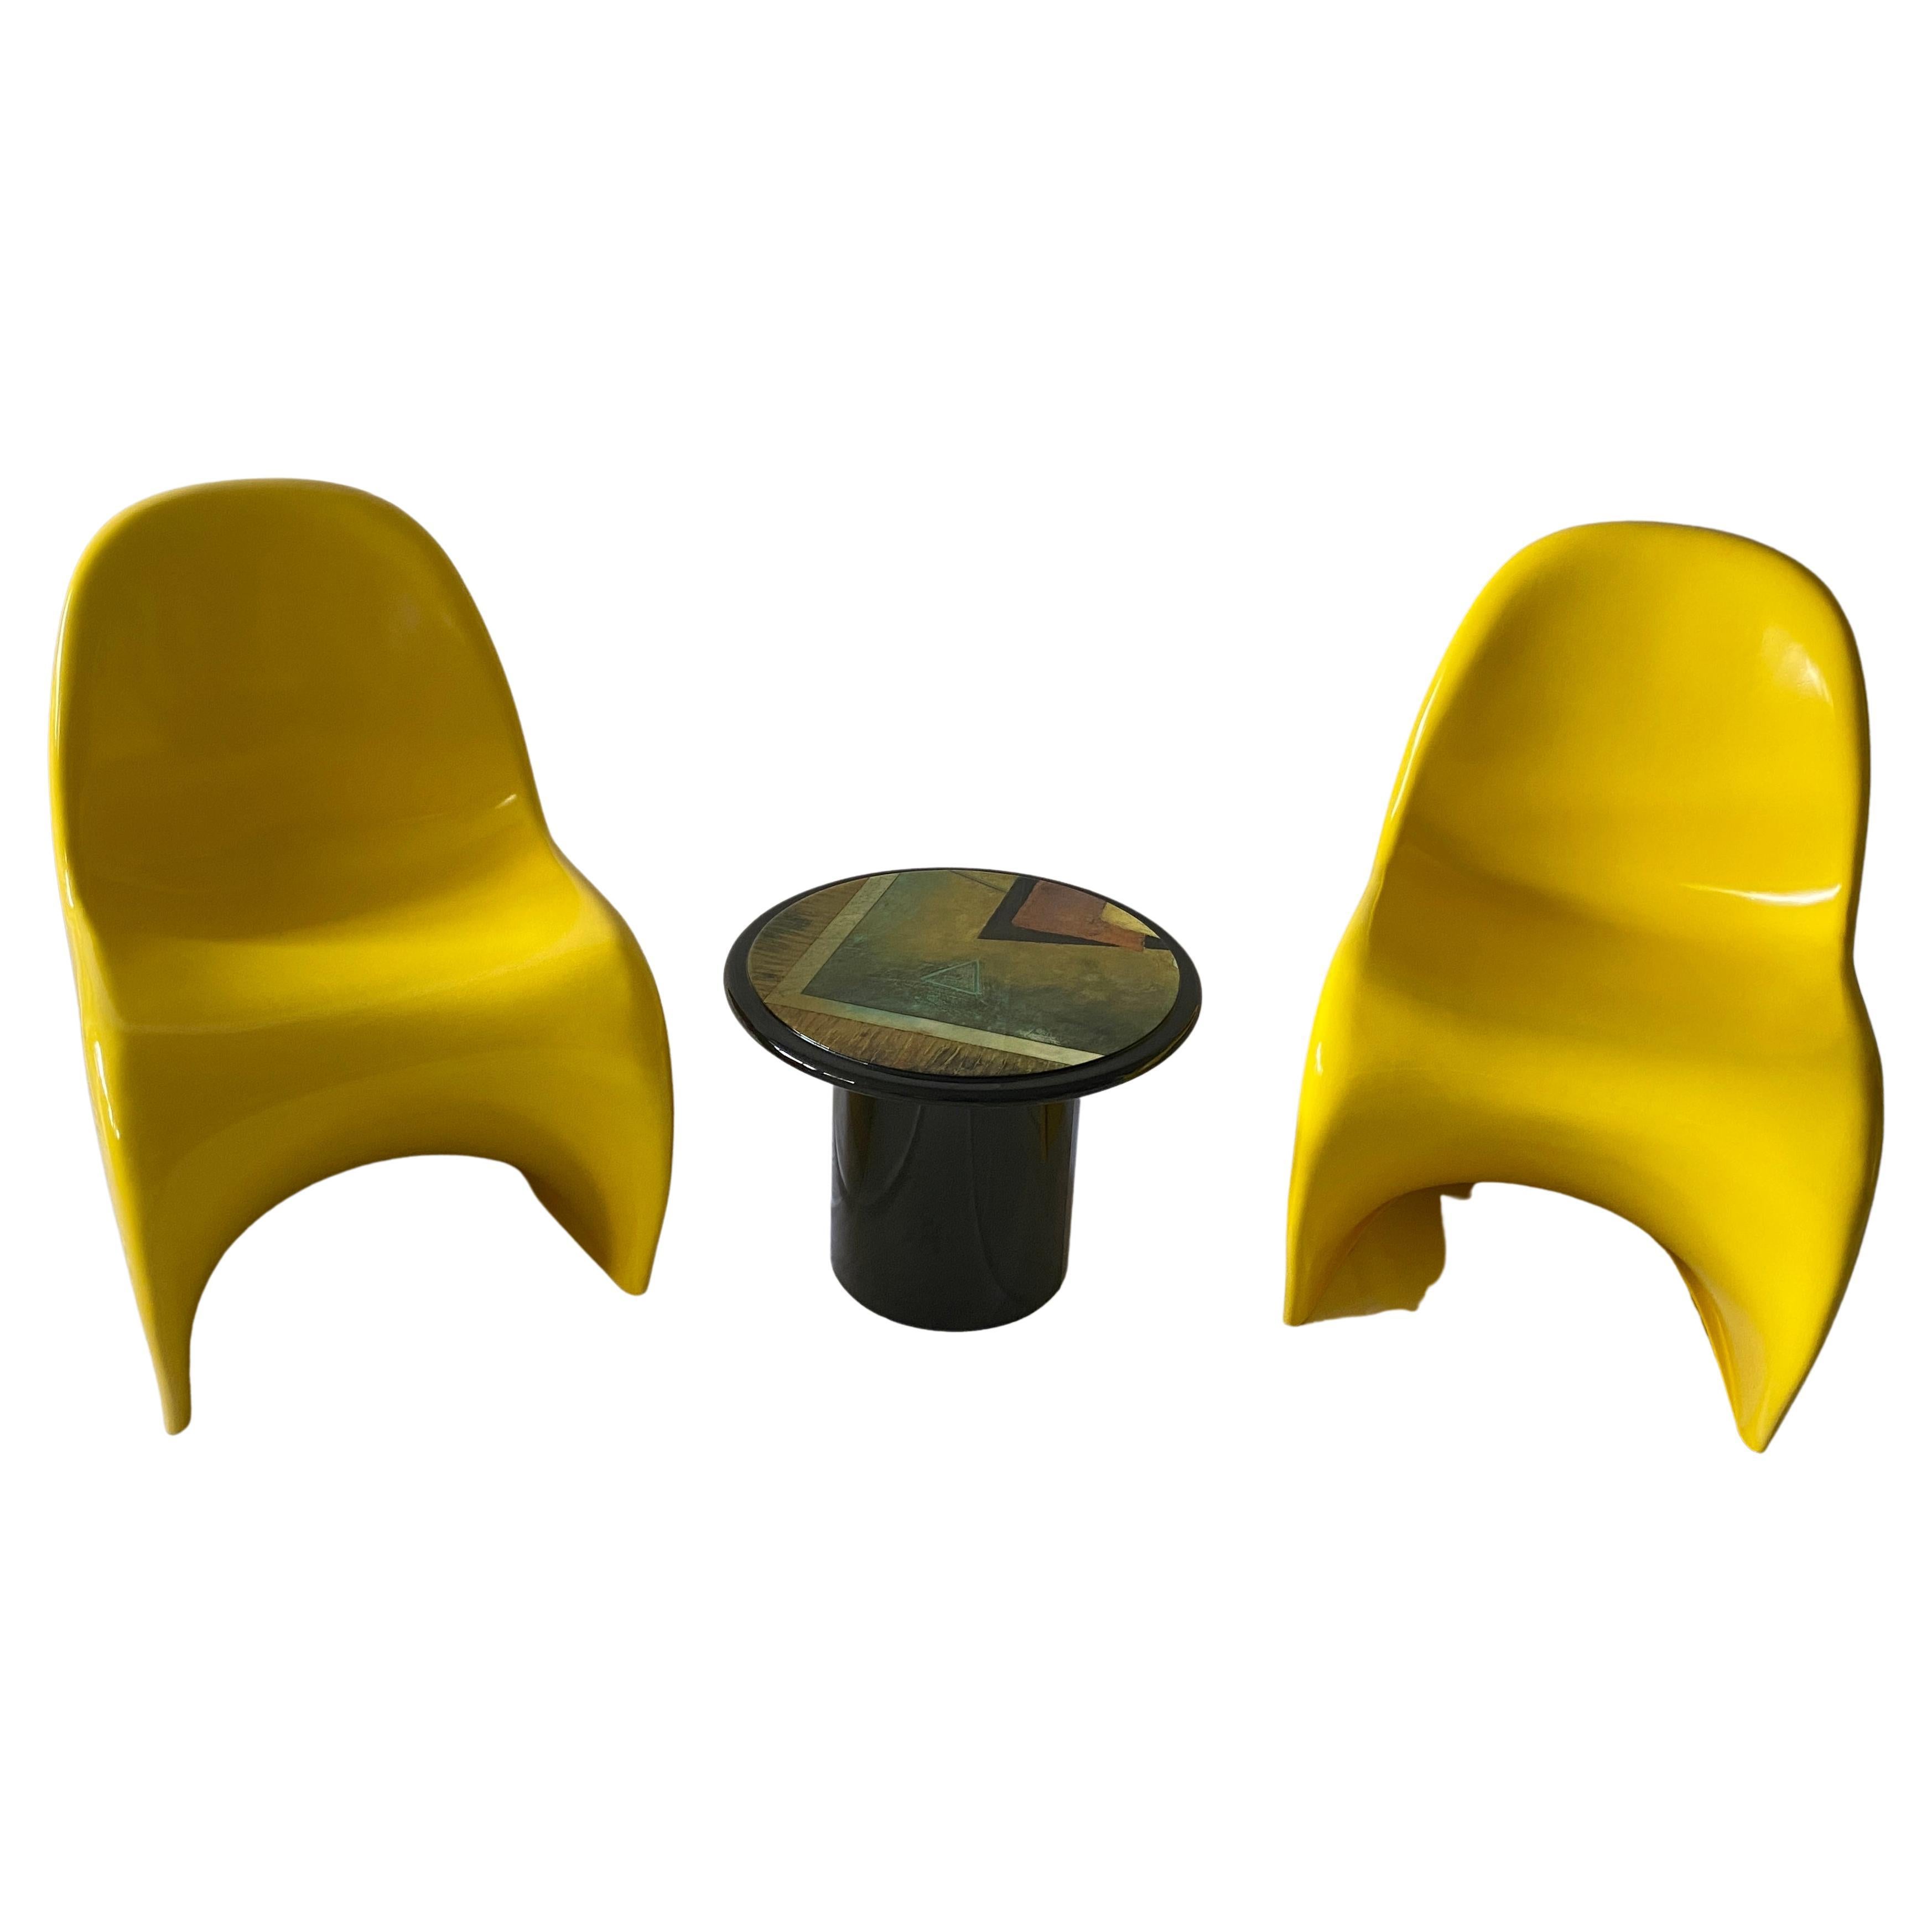 Chaises d'appoint intemporelles en porte-à-faux, conçues par Verner Panton en 1959. Conception de haute qualité en fibre de verre. État unique, retouché. 

Notre paire de chaises Panton en porte-à-faux est d'un jaune doré étonnant, la couleur